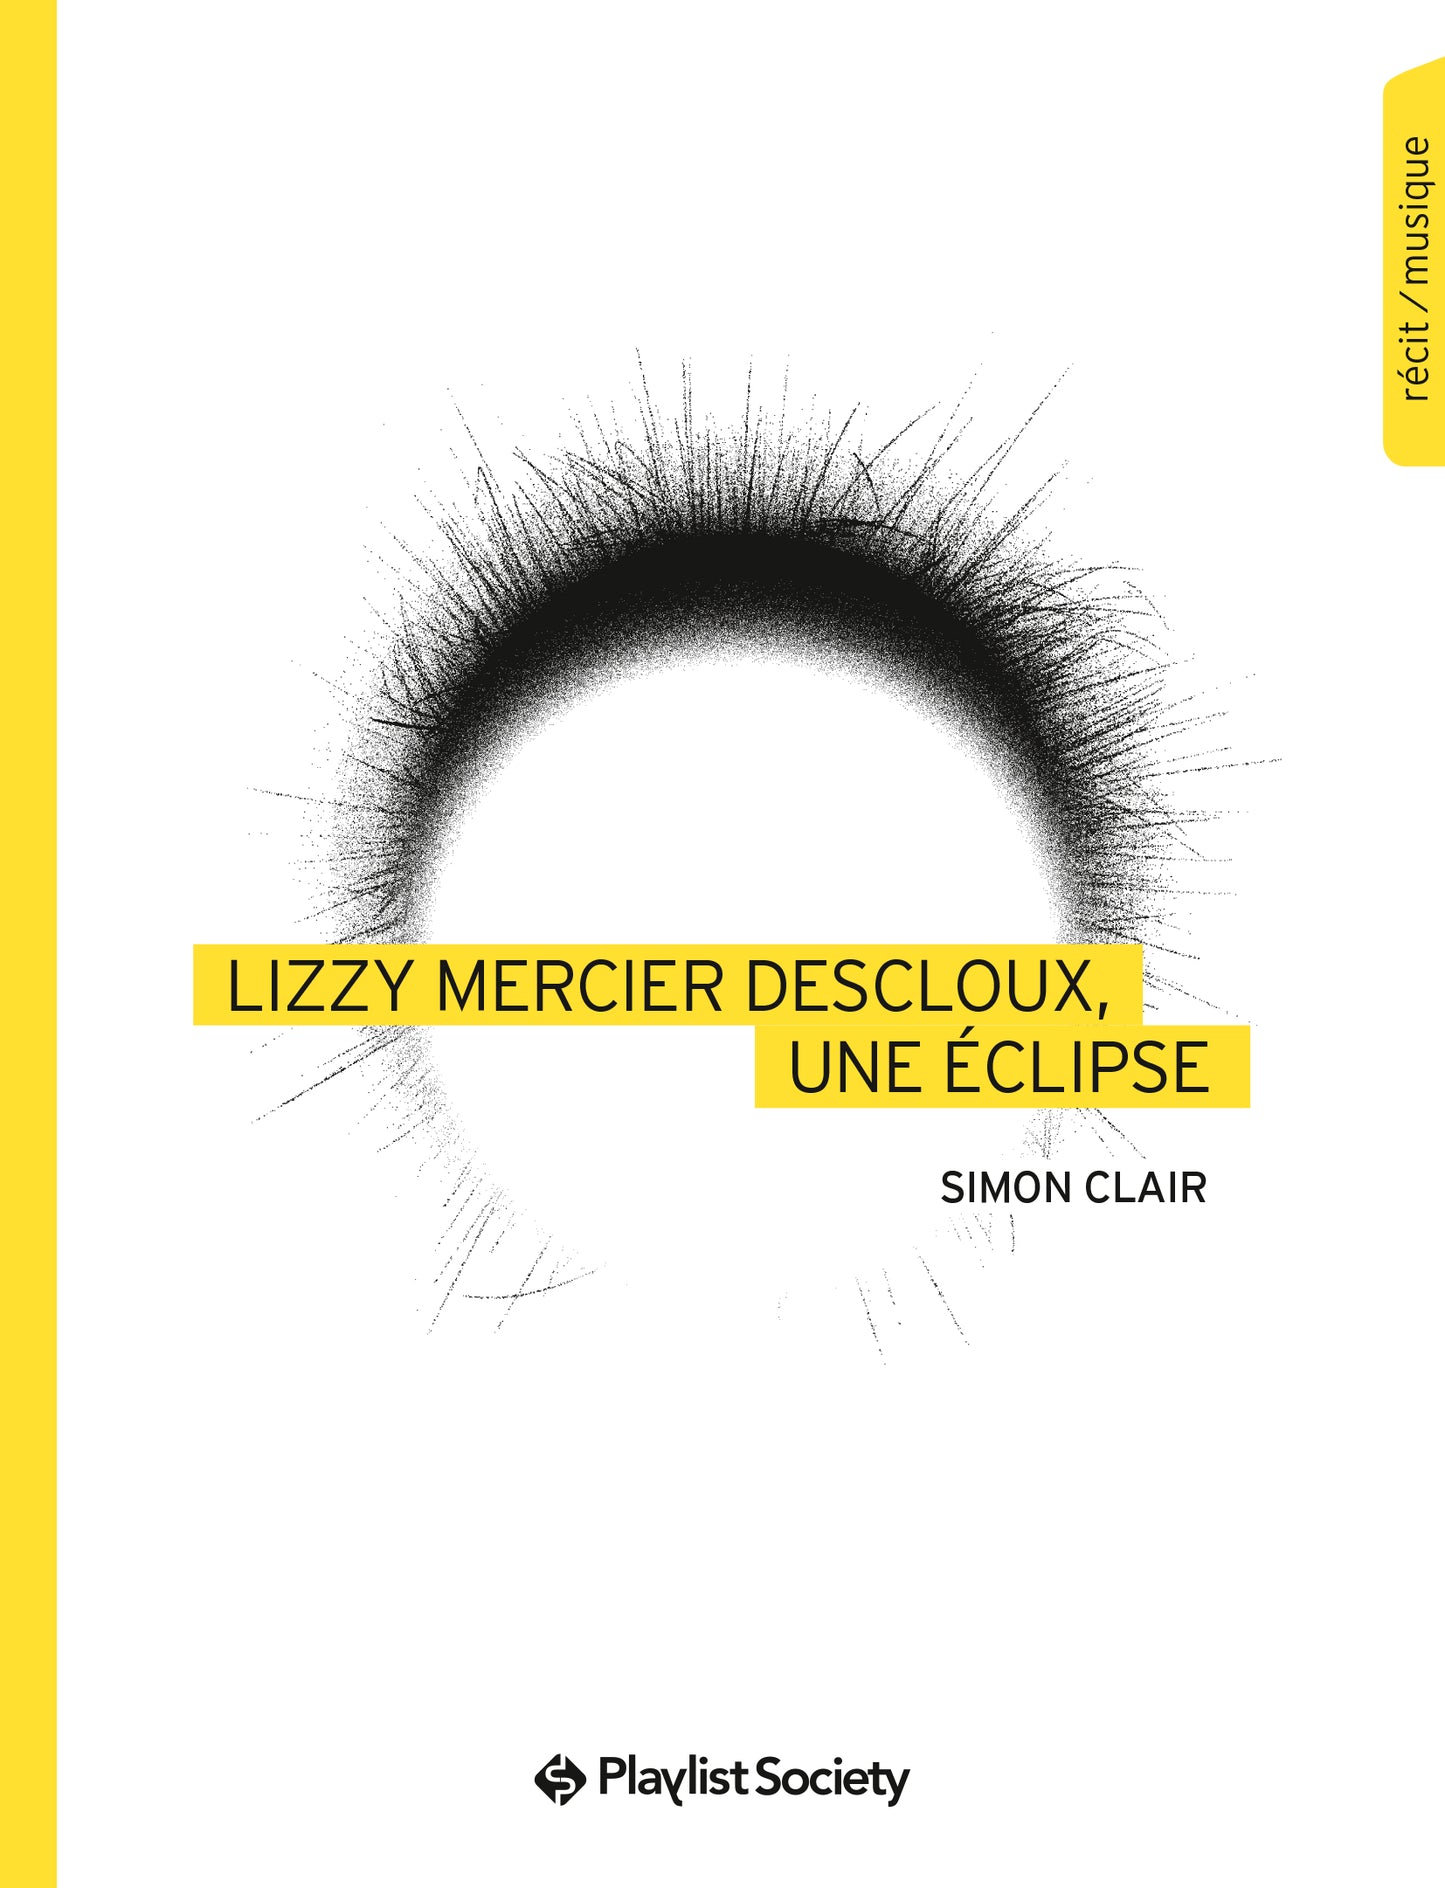 Lizzy Mercier Descloux, une éclipse - Simon Clair